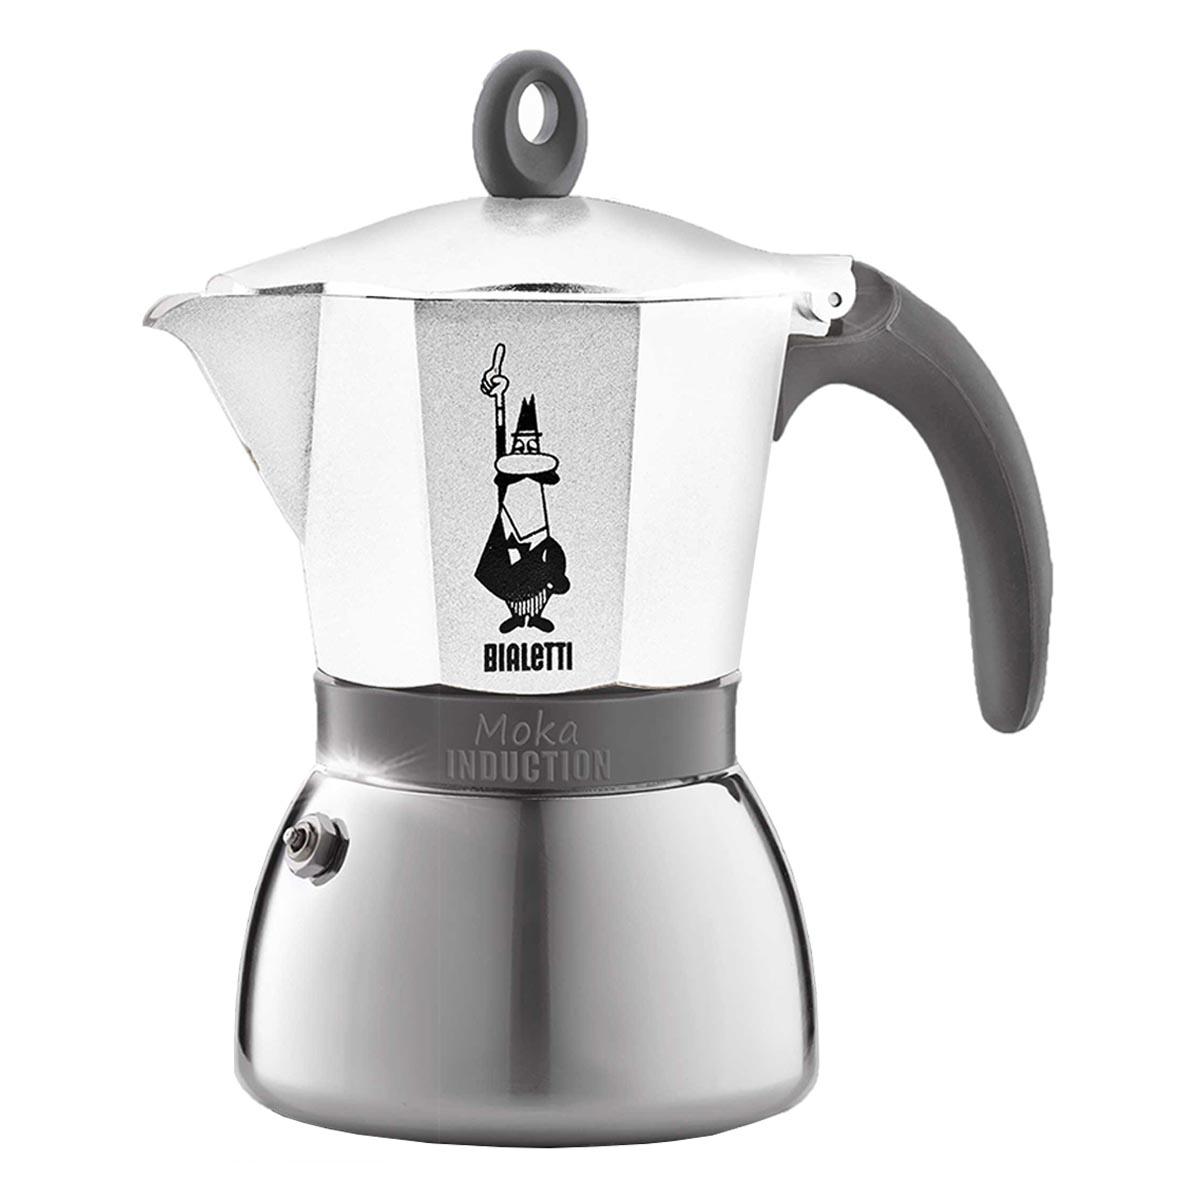 La Cafetiere Bialetti Moka Induction 6 Cups Espresso Maker